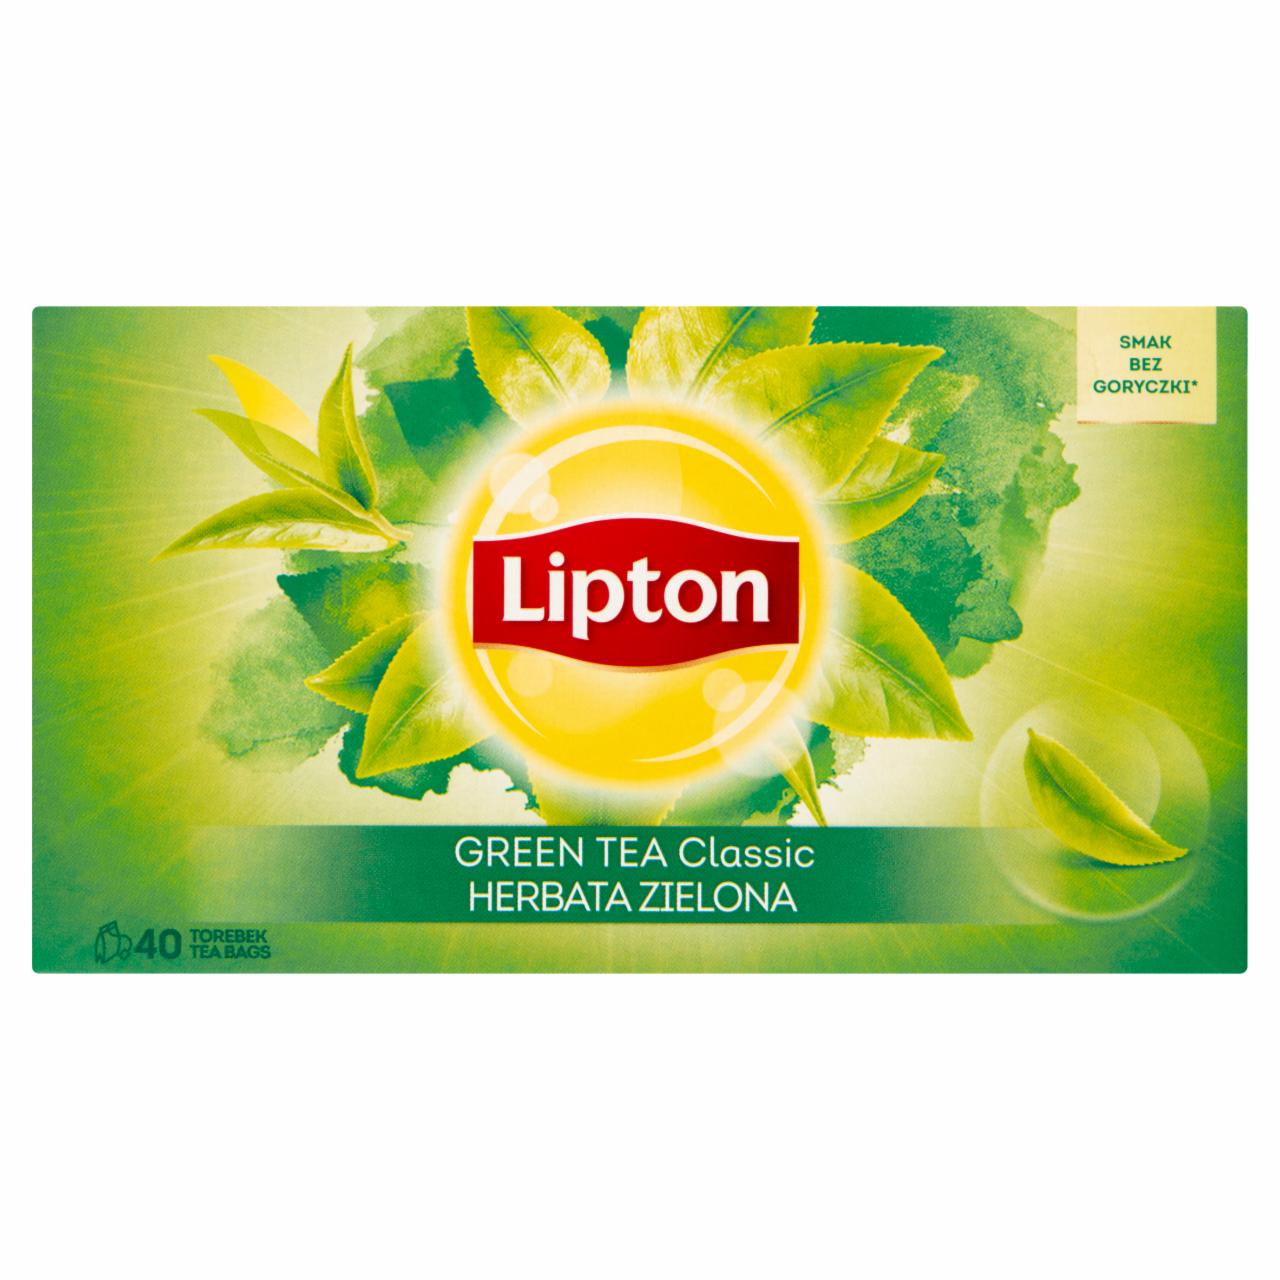 Zdjęcia - Lipton Classic Herbata zielona 52 g (40 torebek)